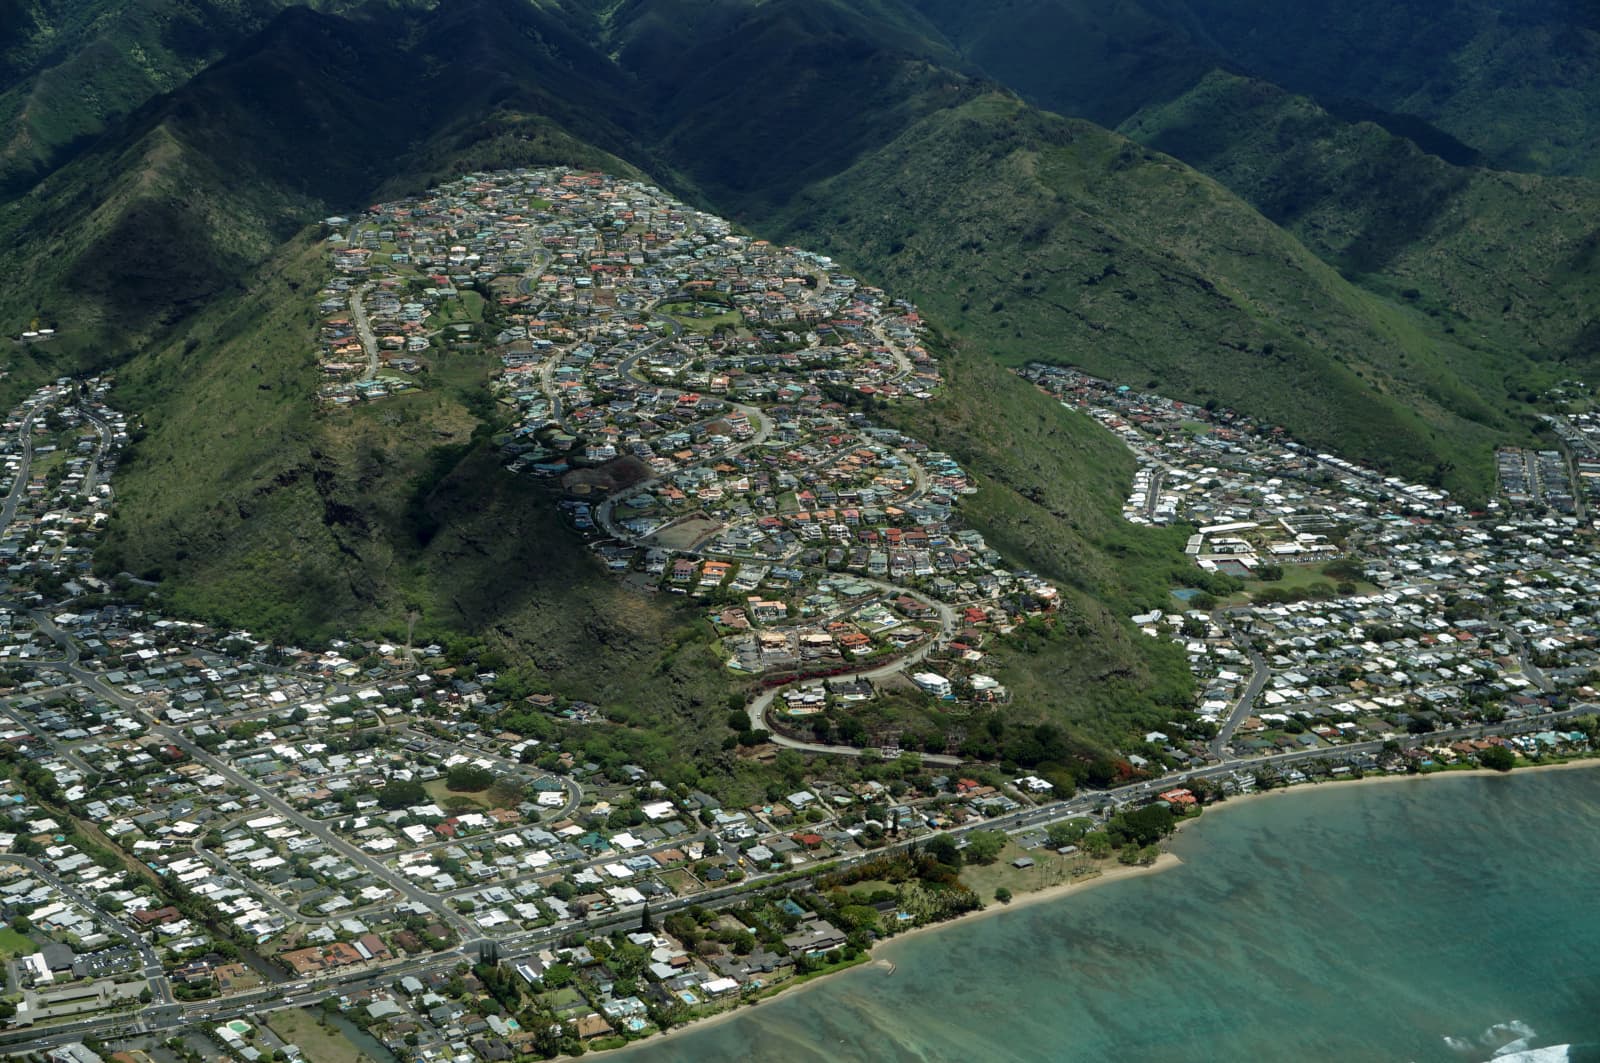 Aina Haina (left), Hawaii Loa Ridge (center), and Niu Valley (right) from above